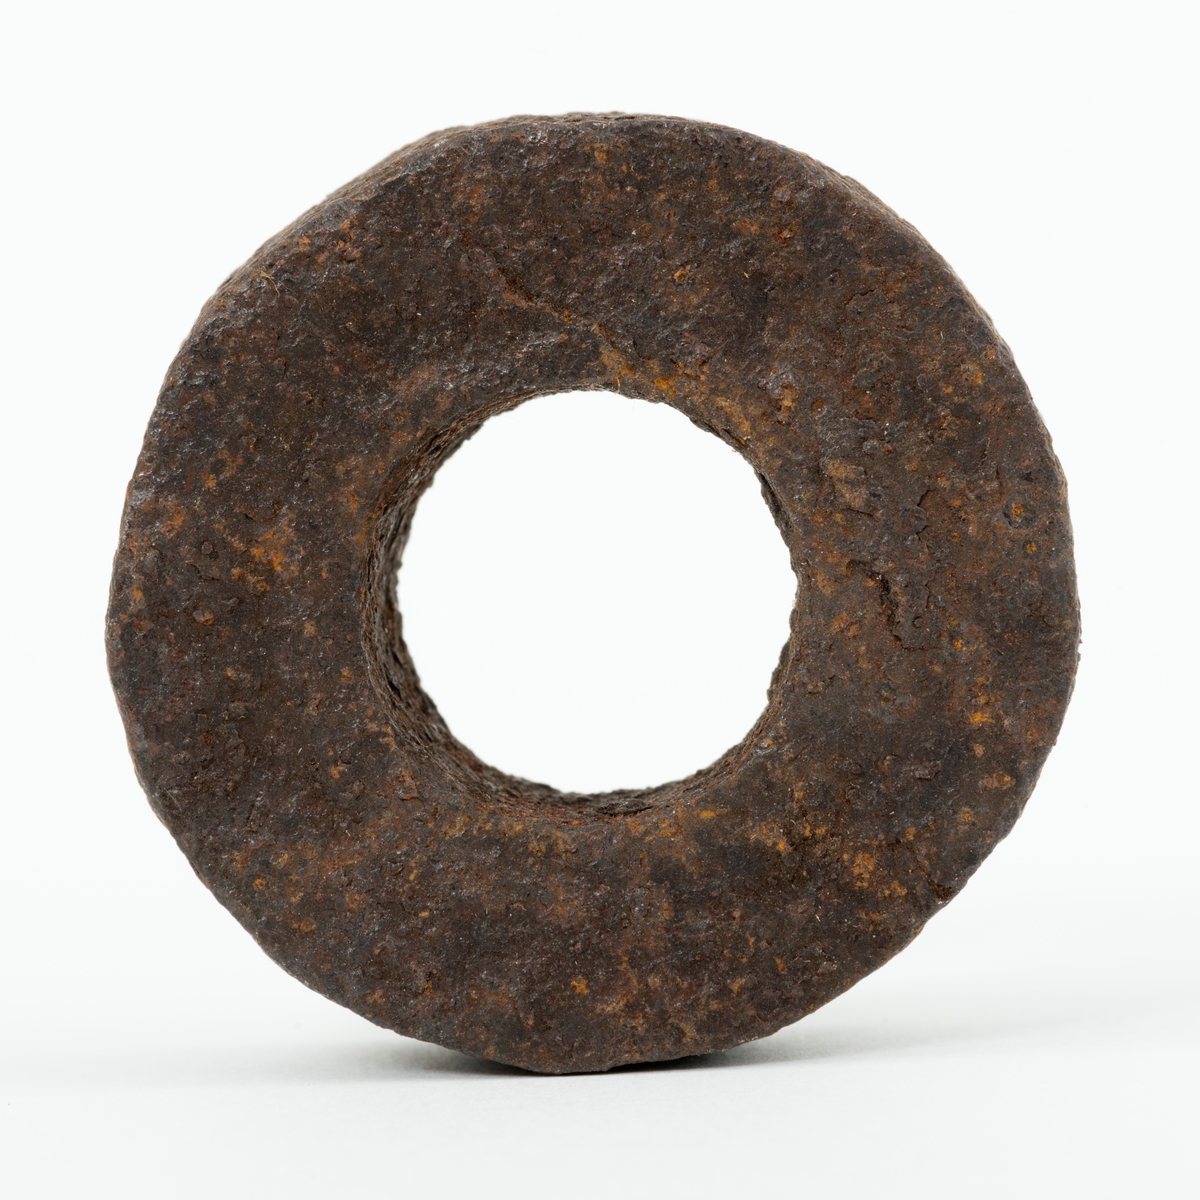 Skive – en jernring, brukt som mellomlegg ved et sammenføyingspunkt på et redskap eller en teknisk installasjon. Skiva eller ringen har en utvendig diameter på 4,2 centimeter. Den innvendige diameteren er 1,9 centimeter. Skiva er drøyt 1,5 centimeter tjukk. Den veier 116 gram.